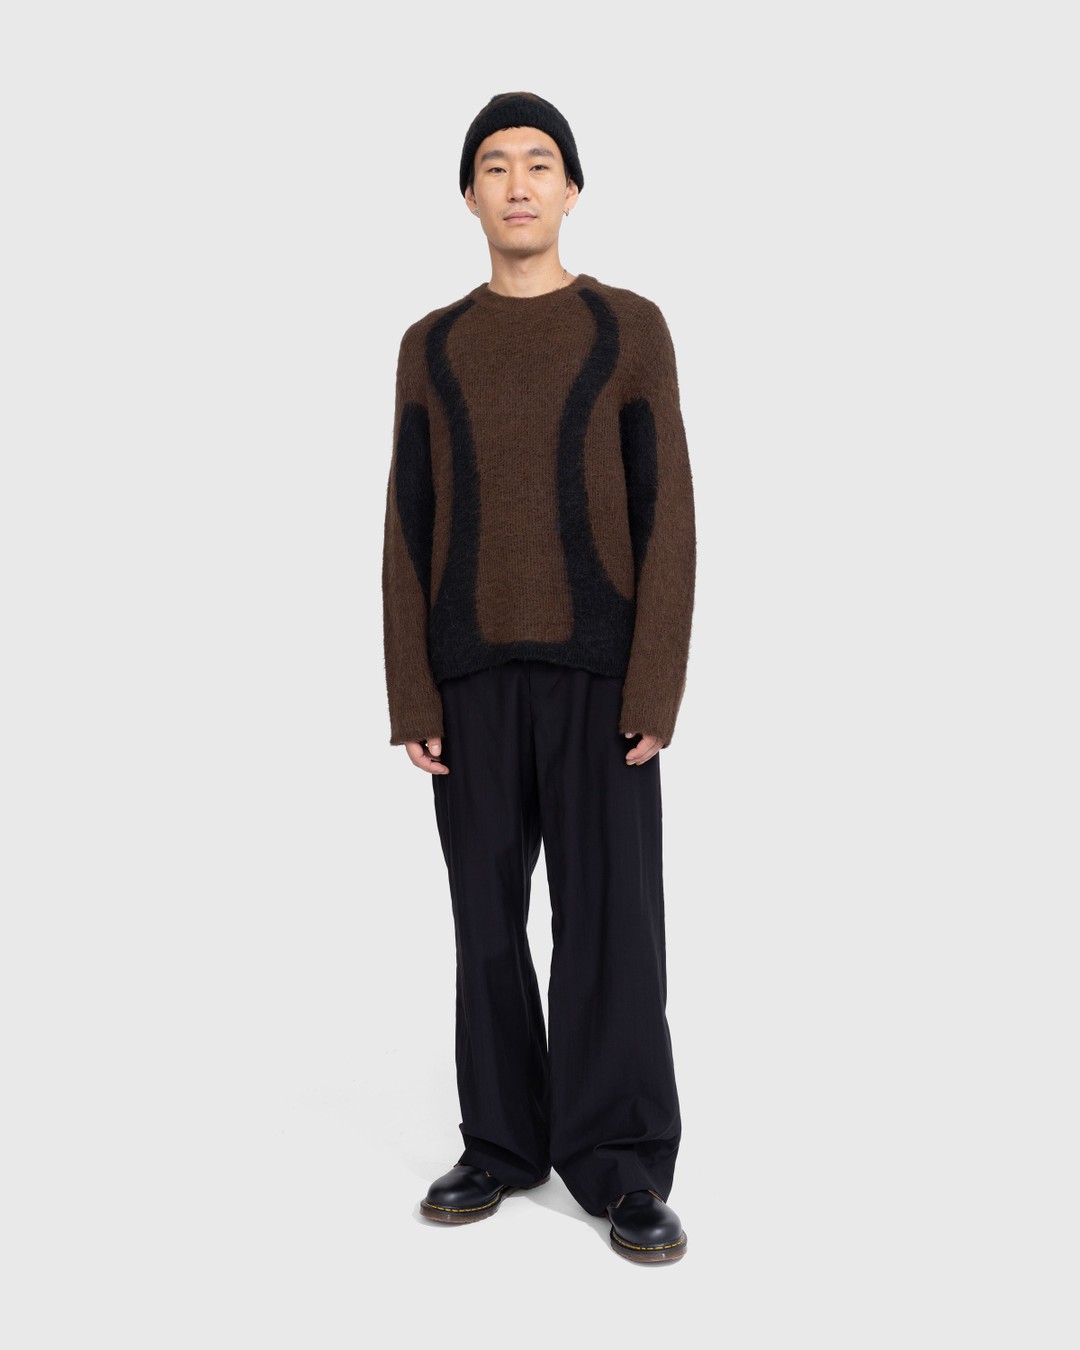 _J.L-A.L_ – Liquid Alpaca Sweater Black - Knitwear - Black - Image 3